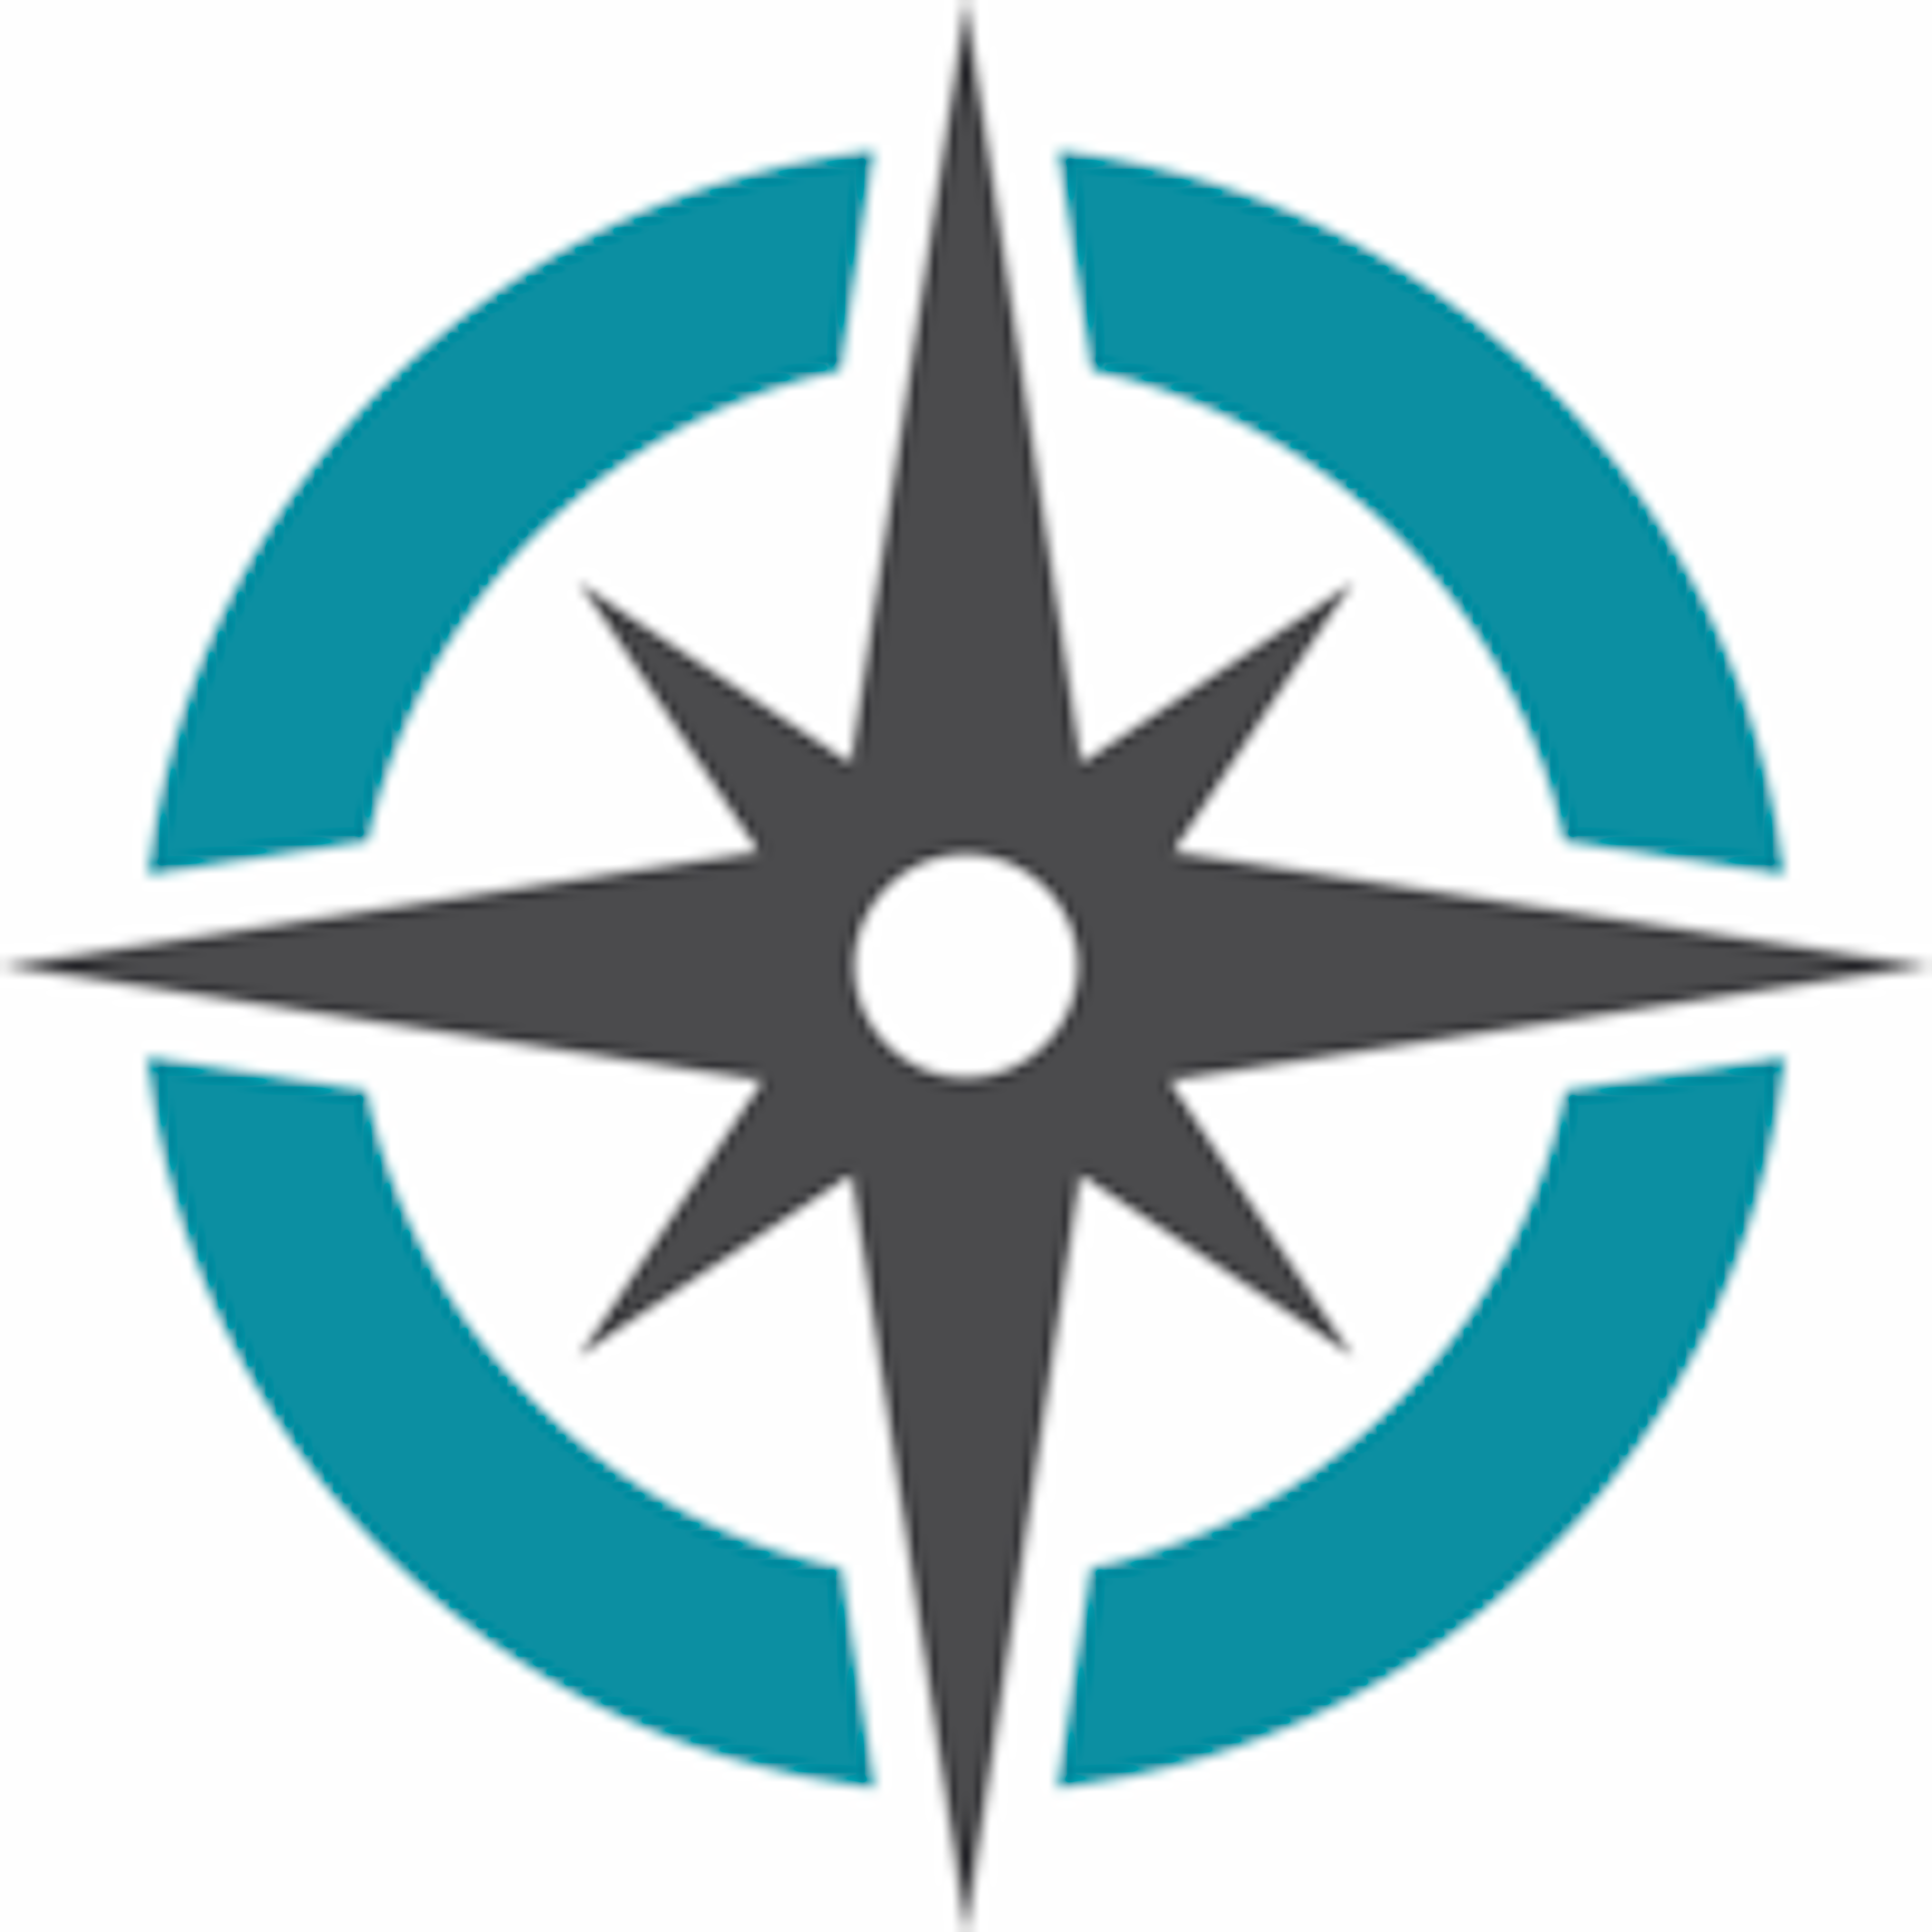 Ezassi Logo